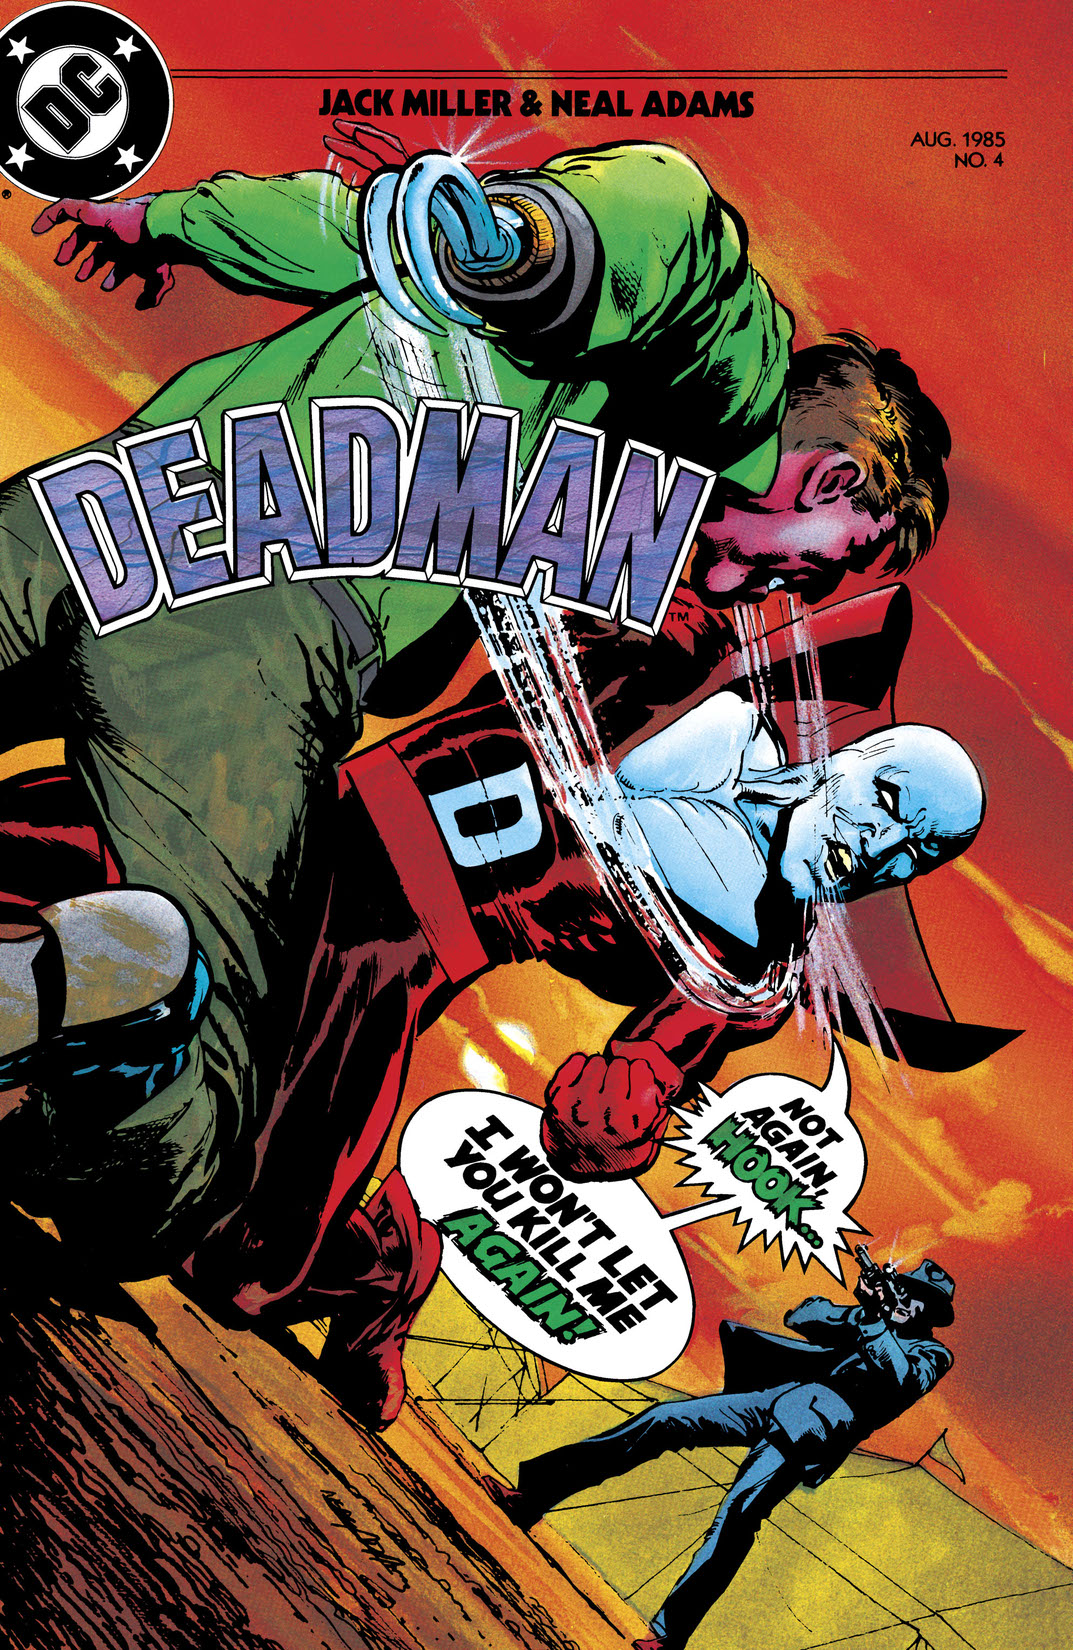 Deadman (1985-1985) #4 preview images